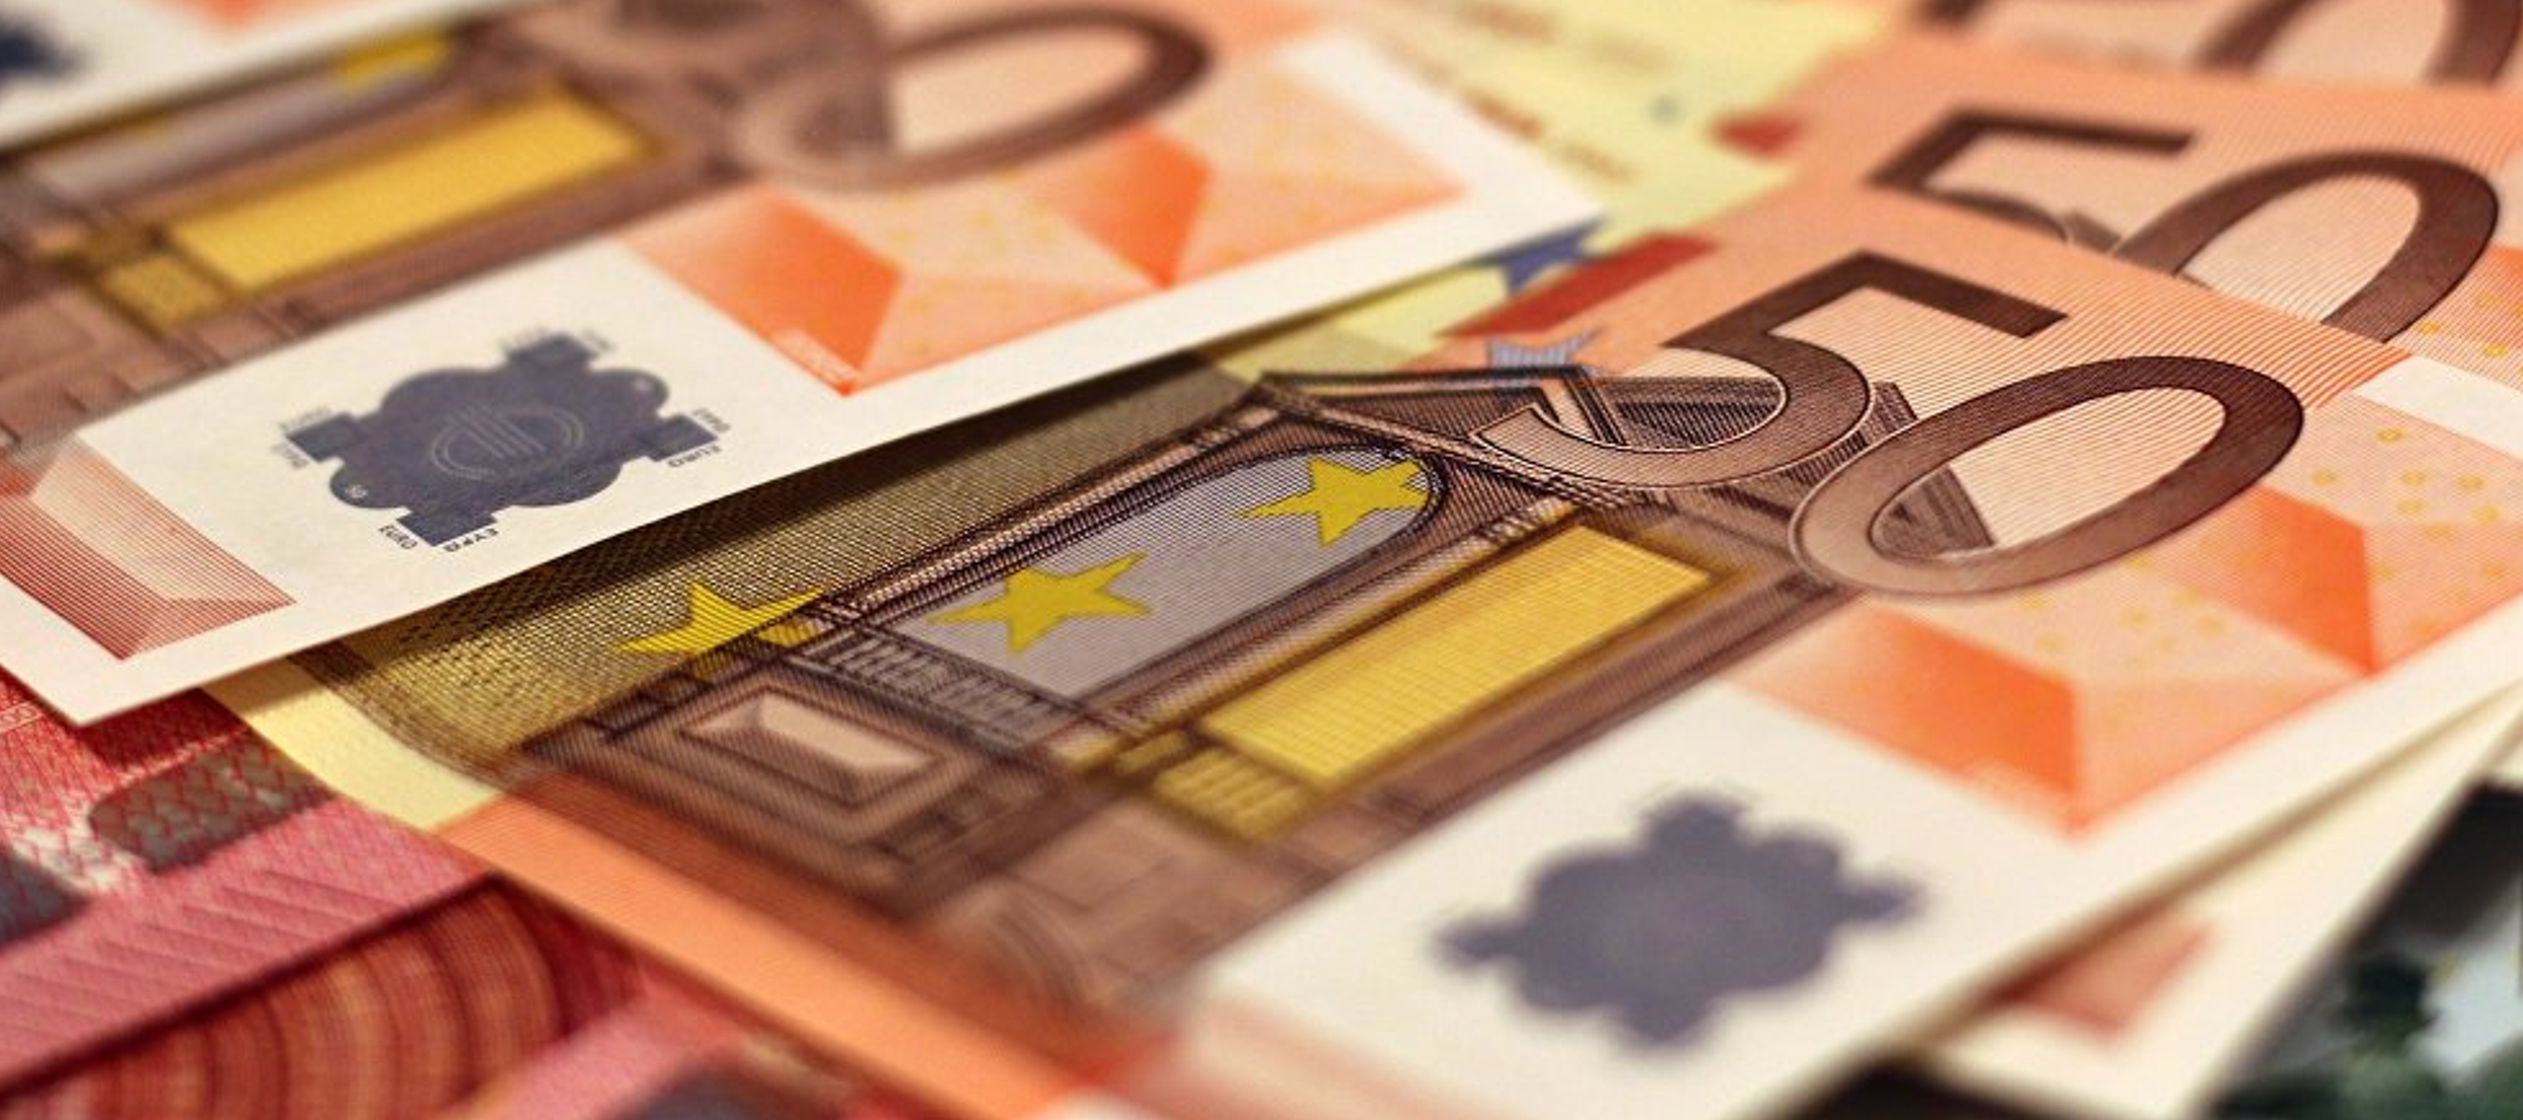 Según Bifarini, la introducción de la moneda única europea ha afectado...